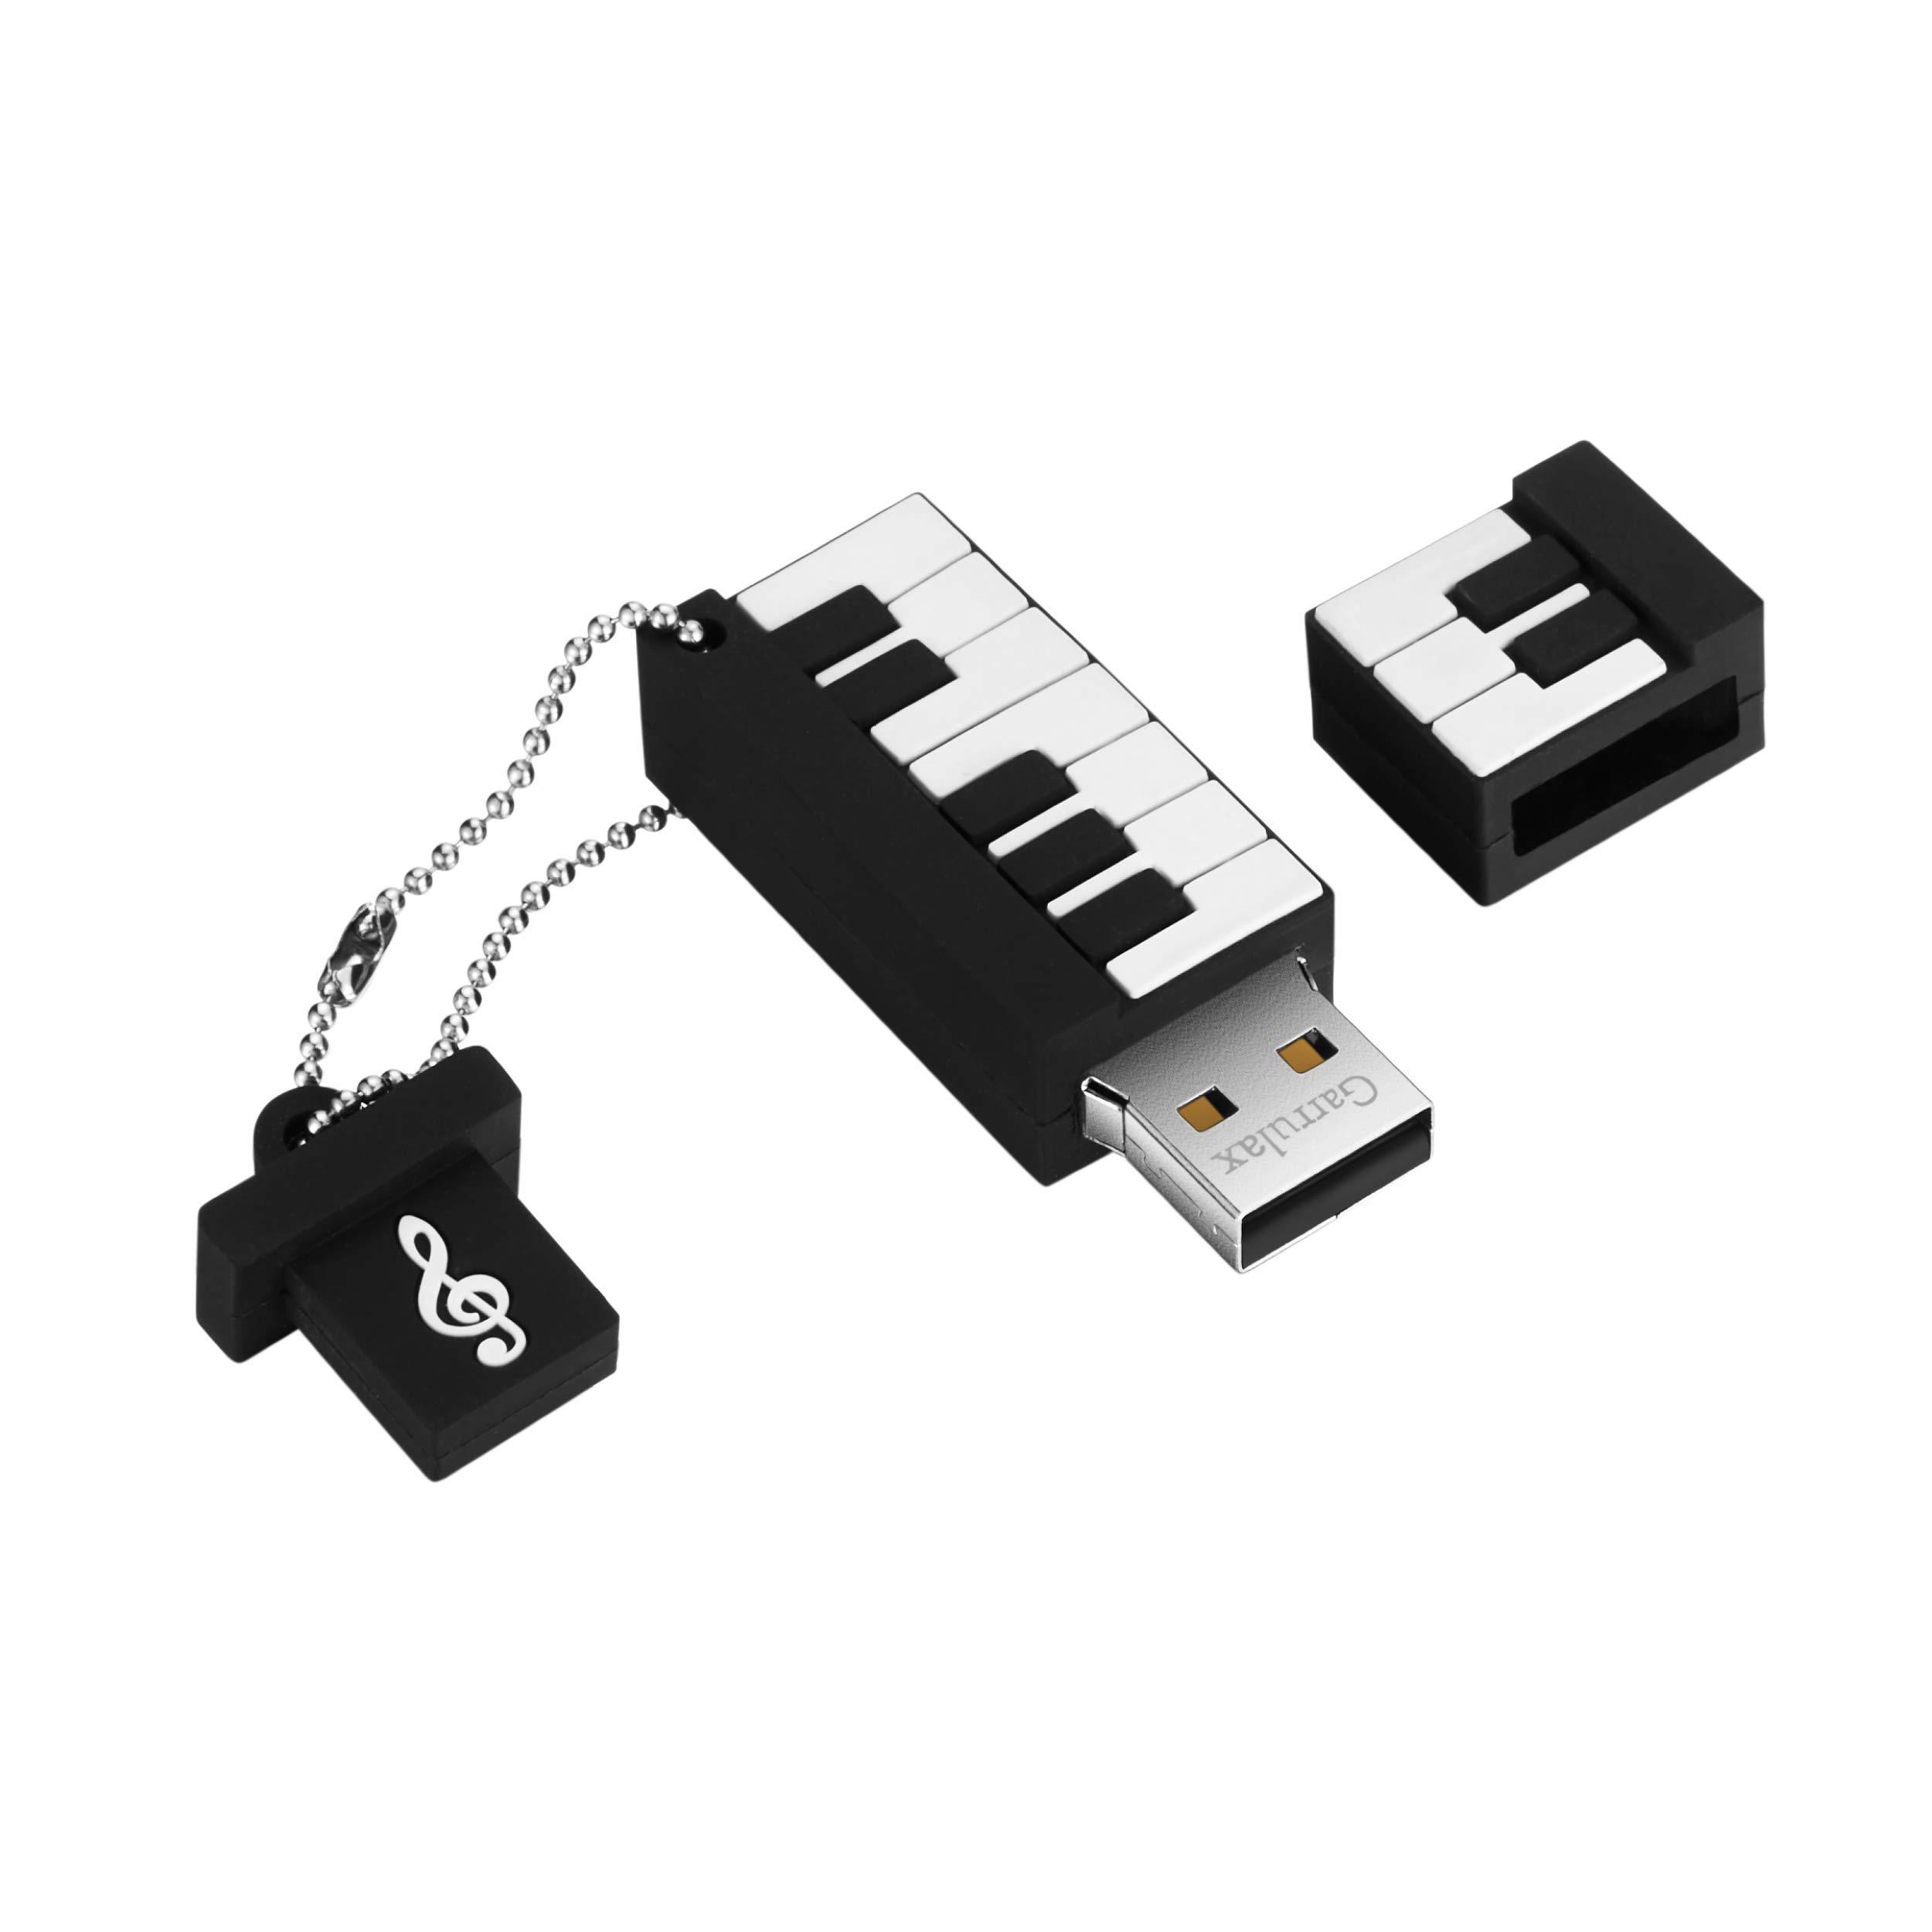 YSeaWolf garrulax usb flash drive, 8gb / 16gb / 32gb usb2.0 cute shape usb memory stick date storage pendrive thumb drives (32gb, pian